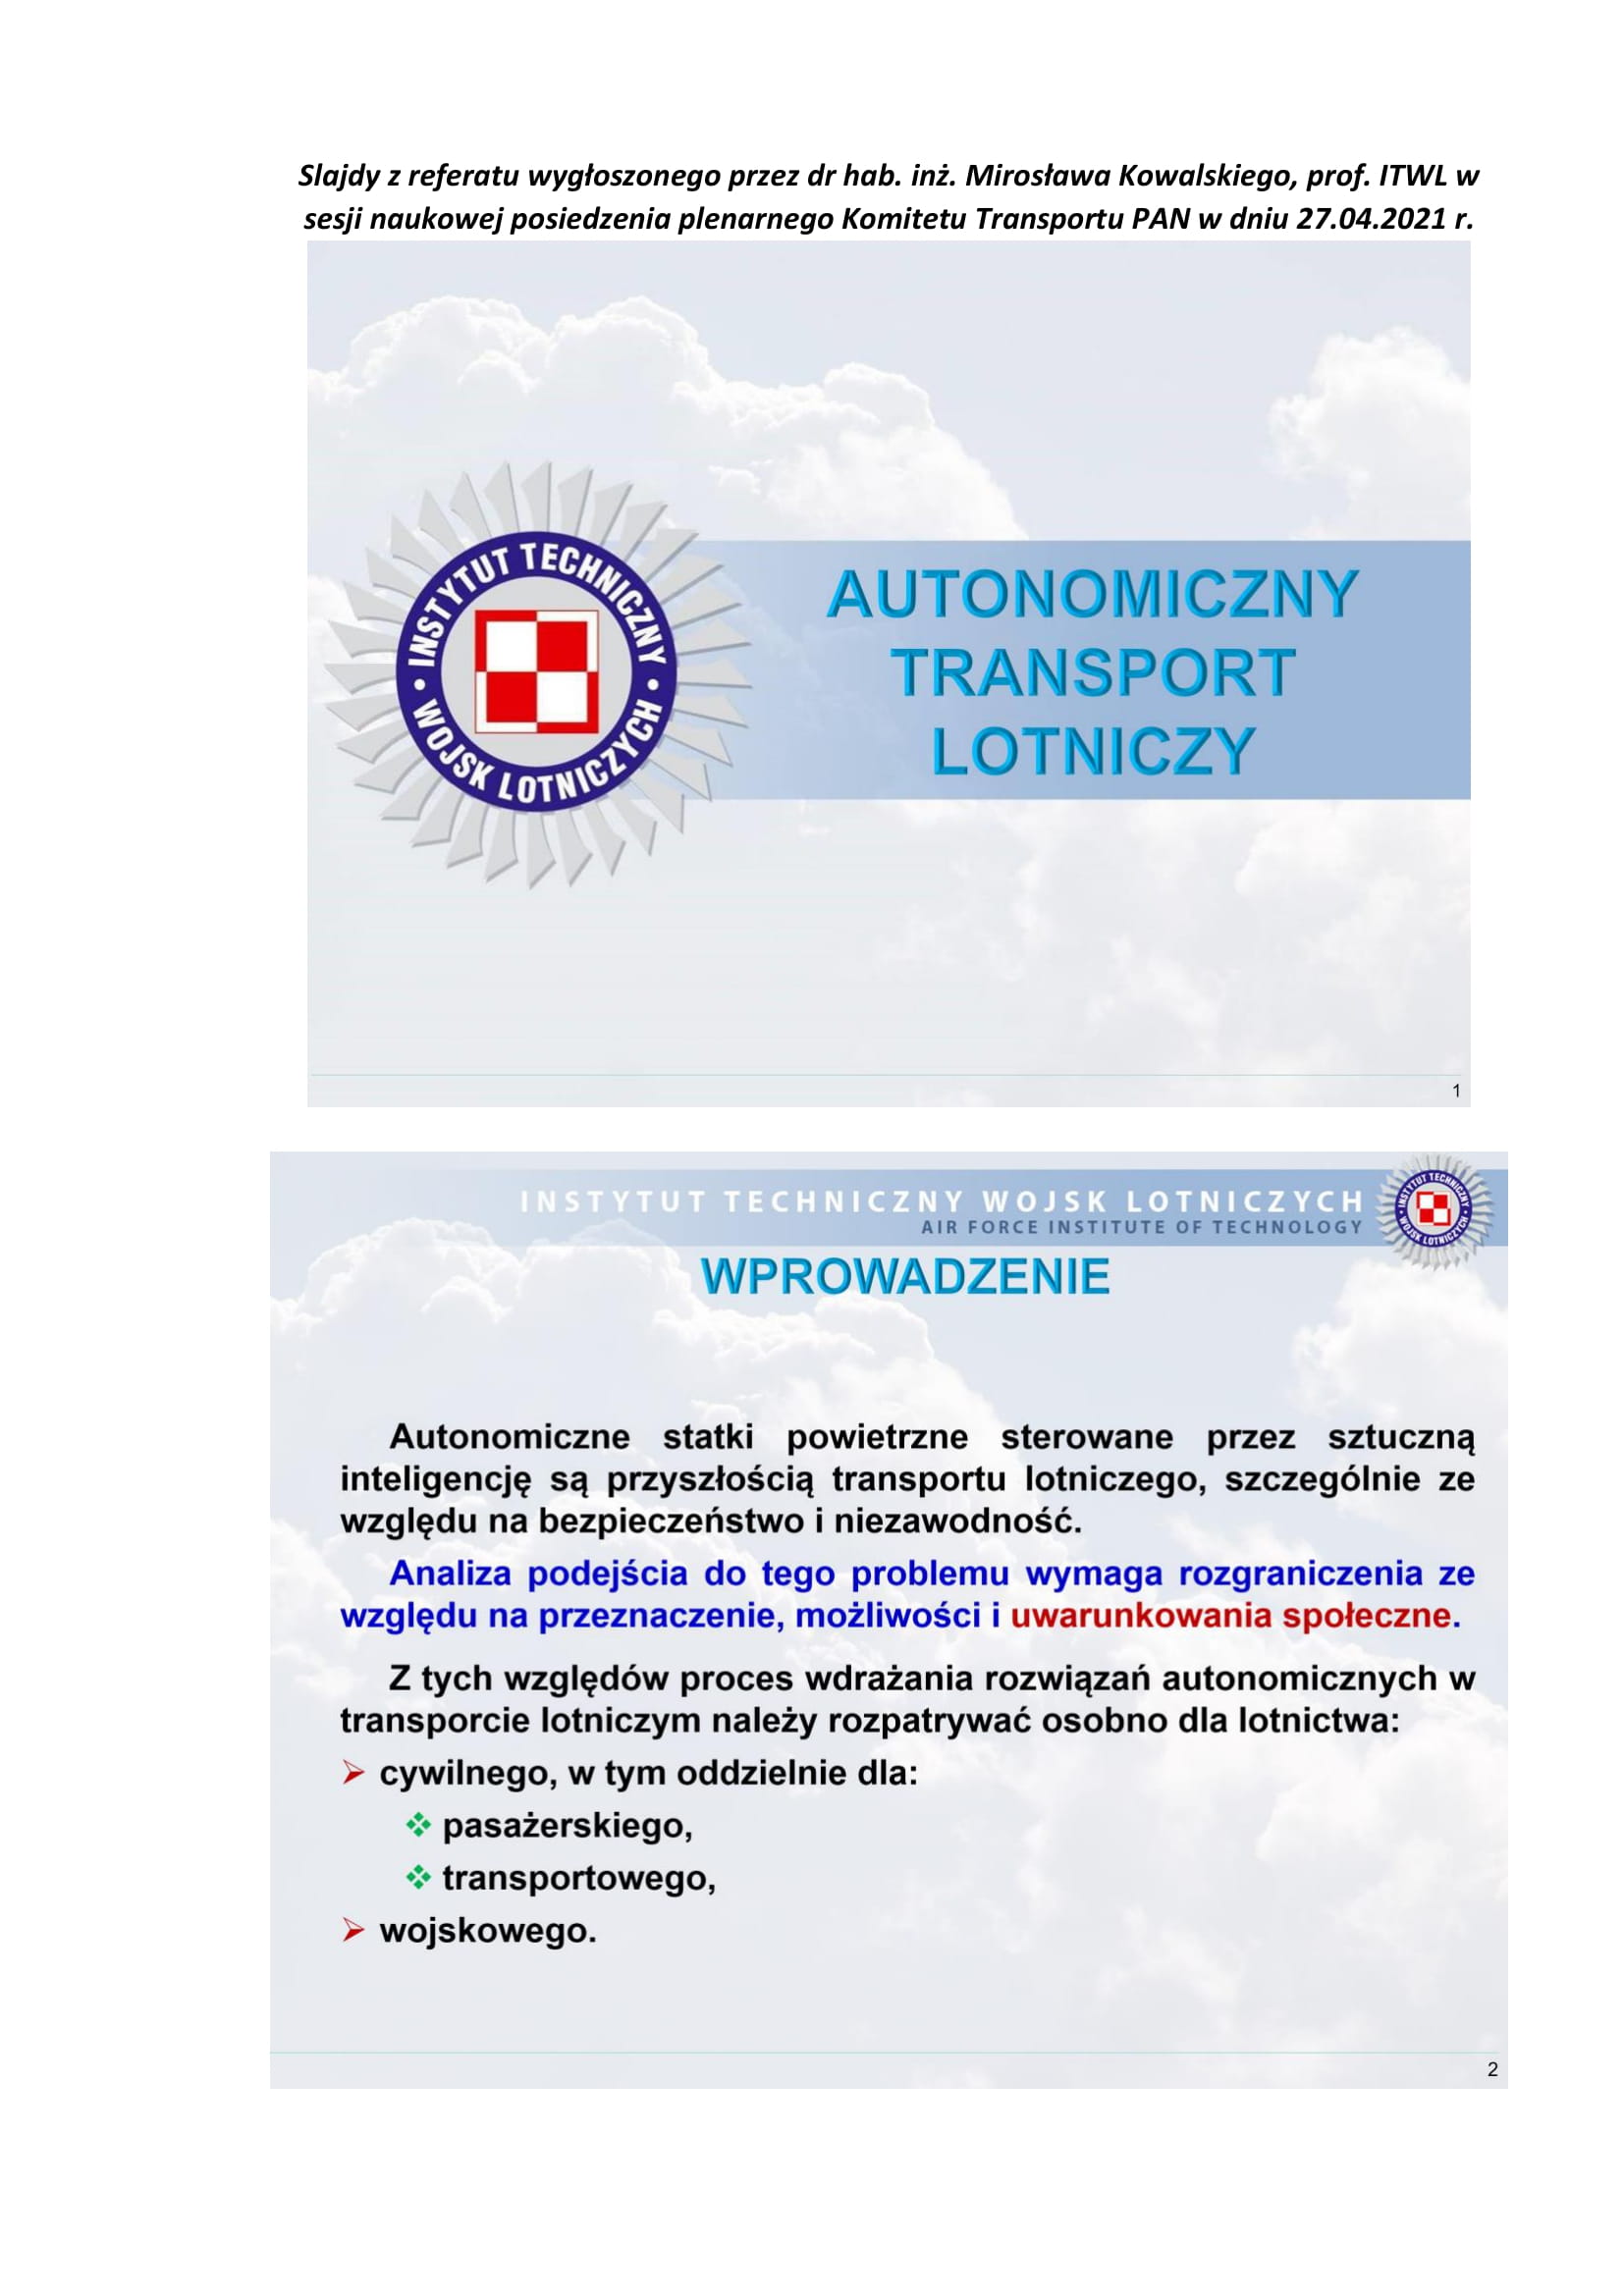 Autonomiczny transport lotniczy 01